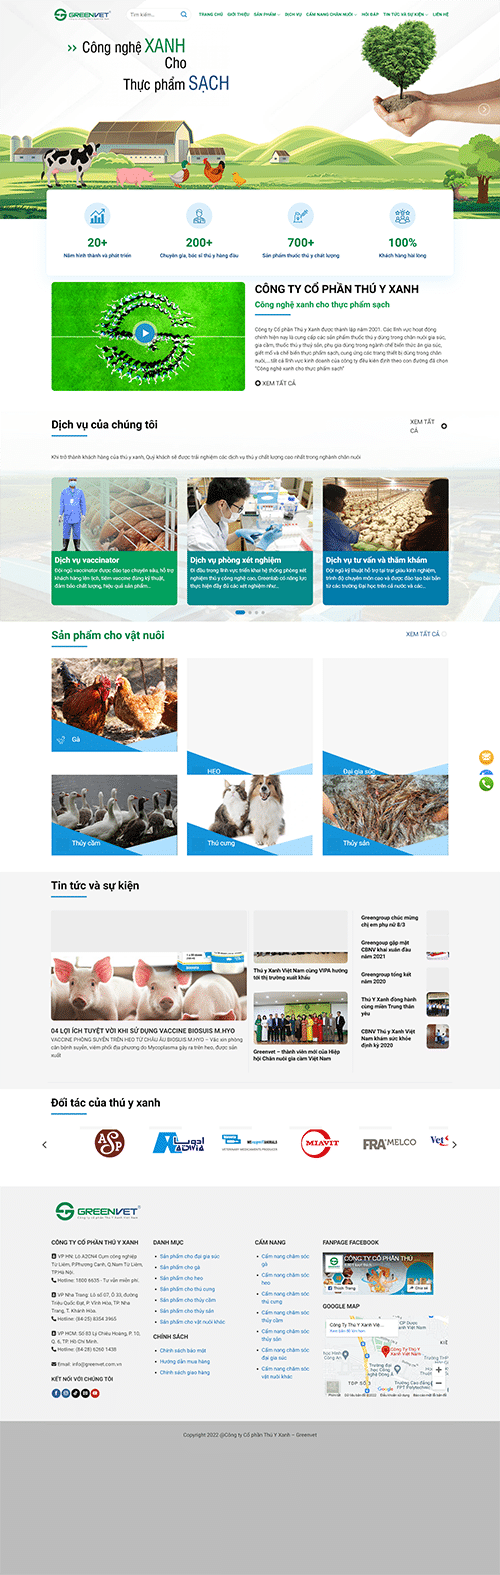 GreenVet - Mẫu website cho công ty thức ăn chăn nuôi